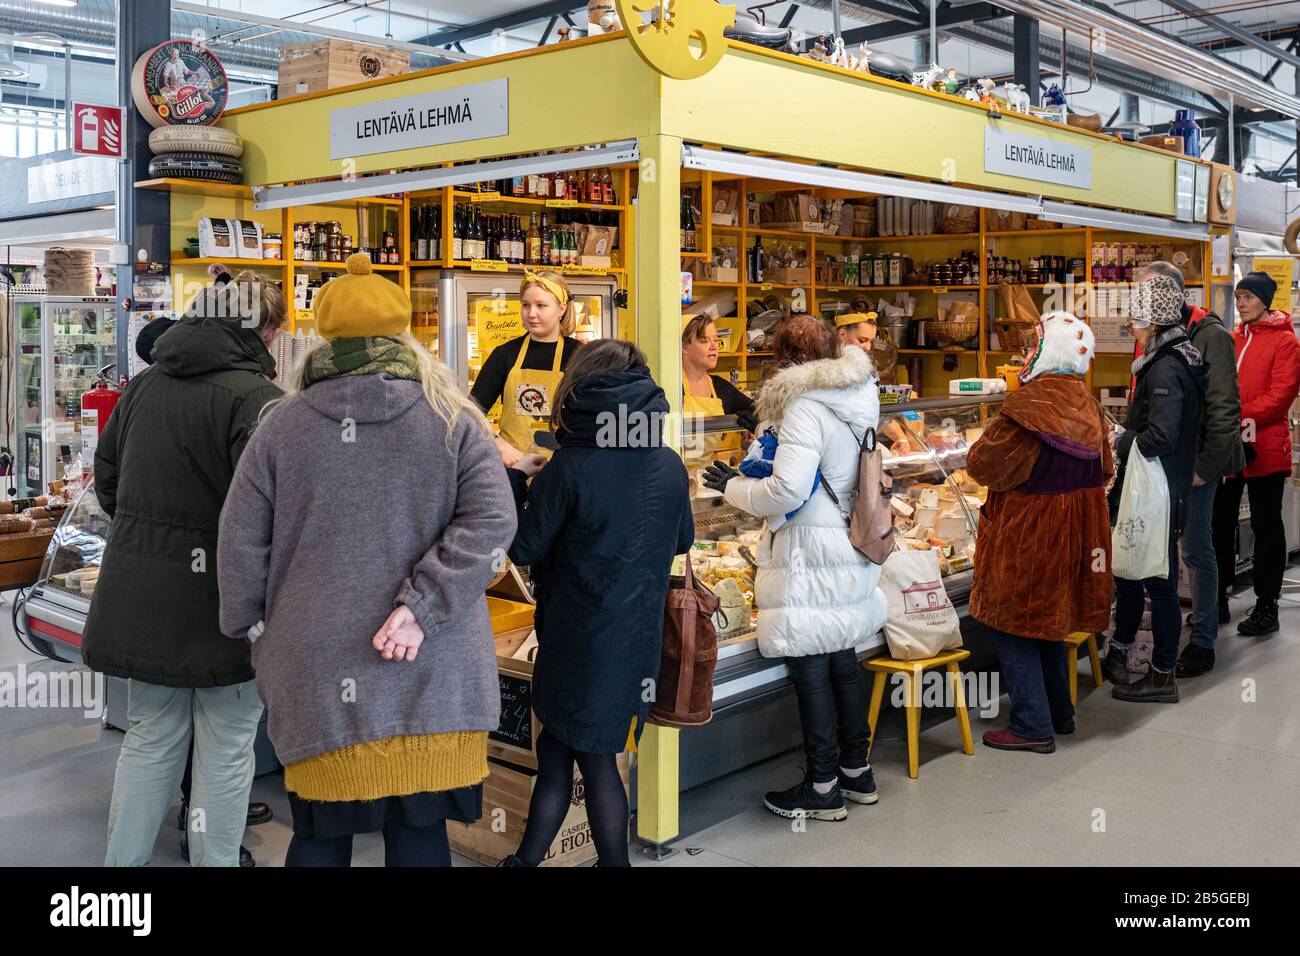 Customers in front of Lentävä Lehmä, yellow cheese vendor stall at Hakaniemi temporary indoor market hall in Helsinki, Finland Stock Photo